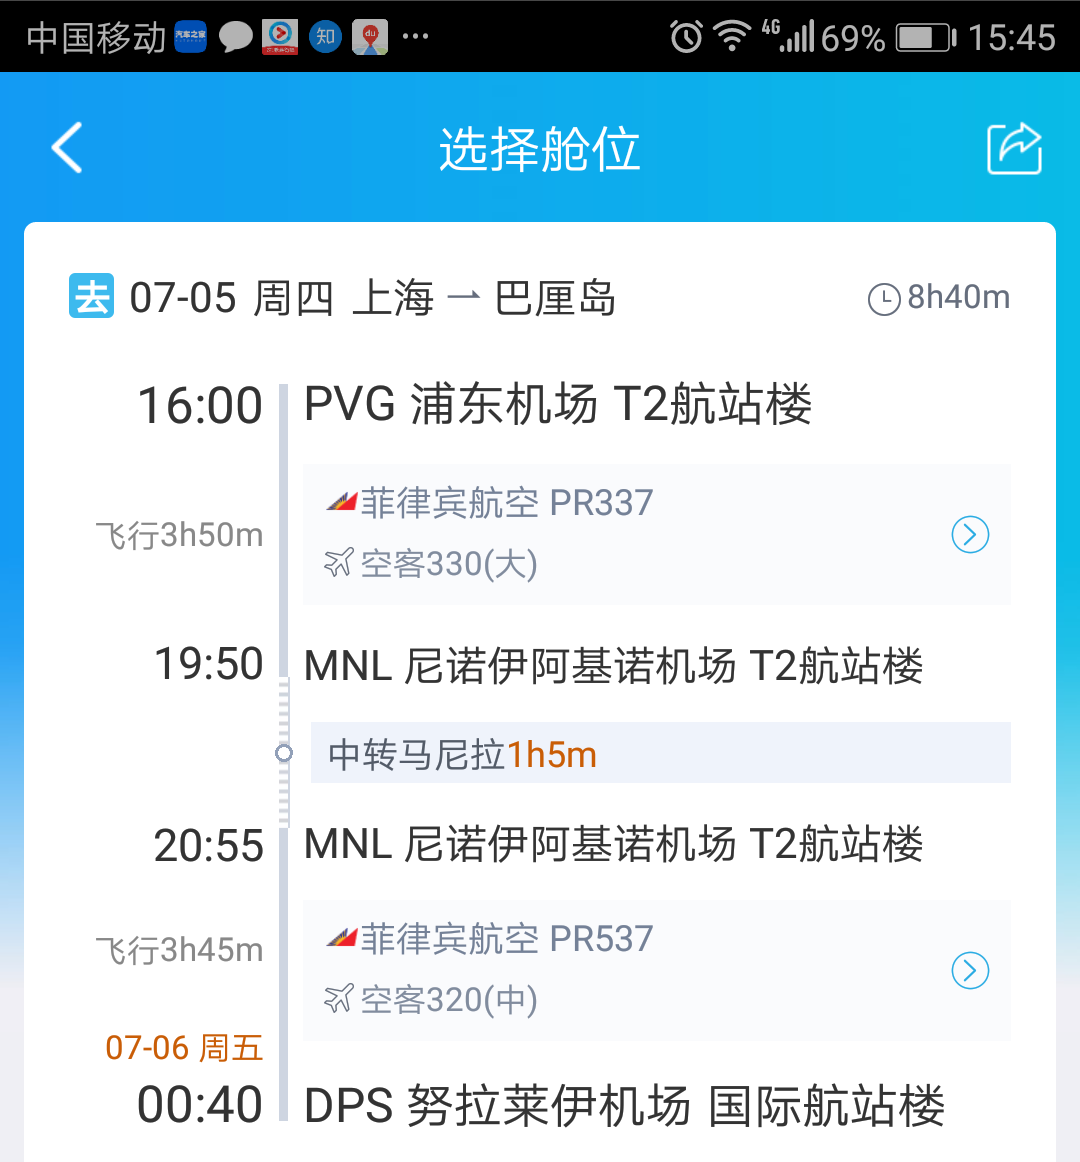 上海到巴厘岛中间在马尼拉转机,联程机票都在马尼拉t2,一个小时够吗?